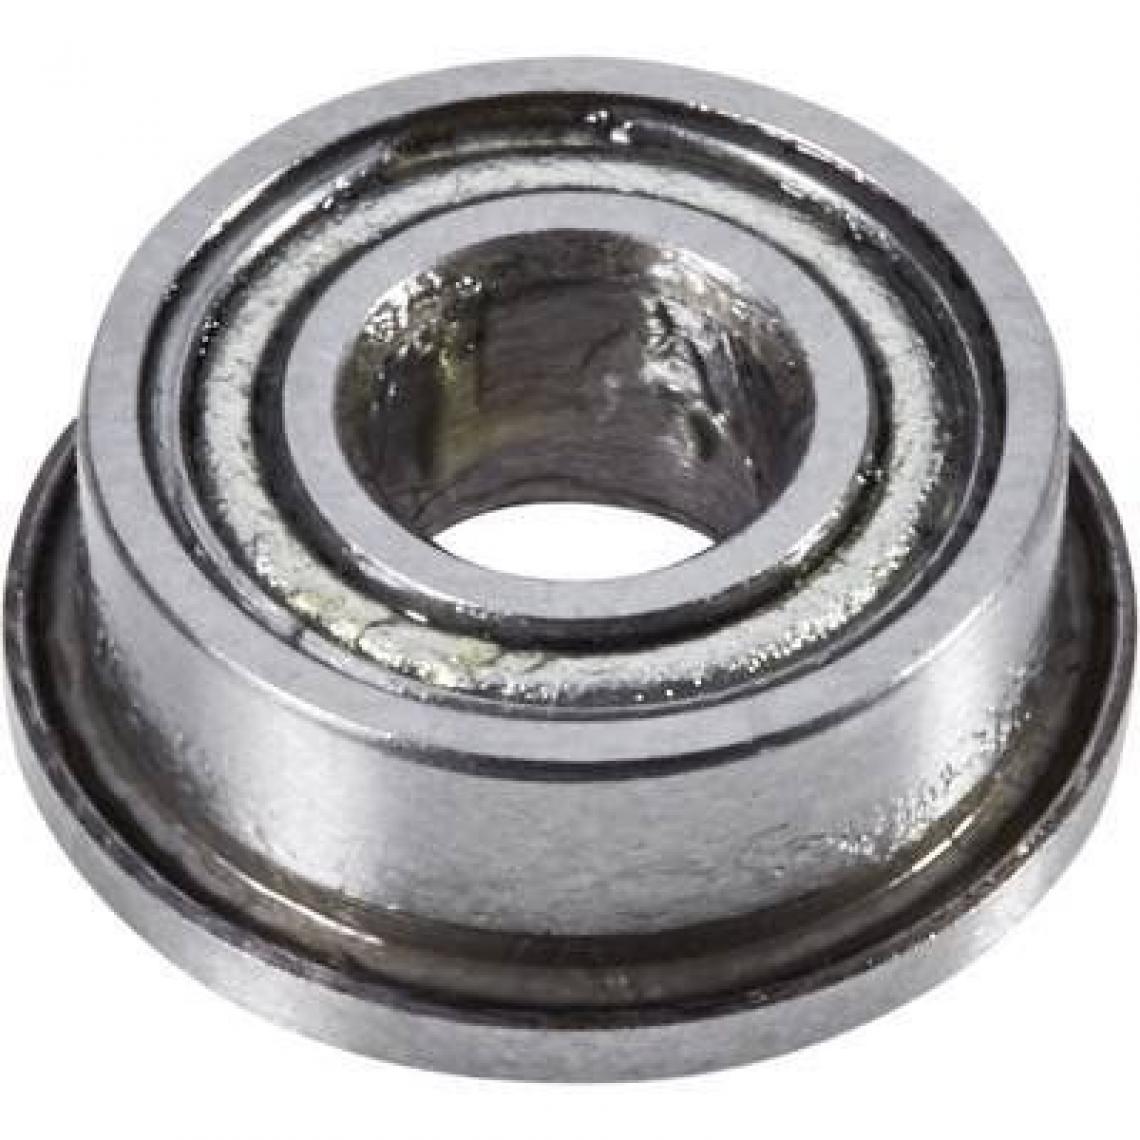 Inconnu - Reely rainure Roulement Radial en acier chromé diamètre intérieurâ€¯: 6 mm Diamètre extérieurâ€¯: 12 mm Vitesse (Max.)â€¯: 43000 tr/min - Accessoires et pièces